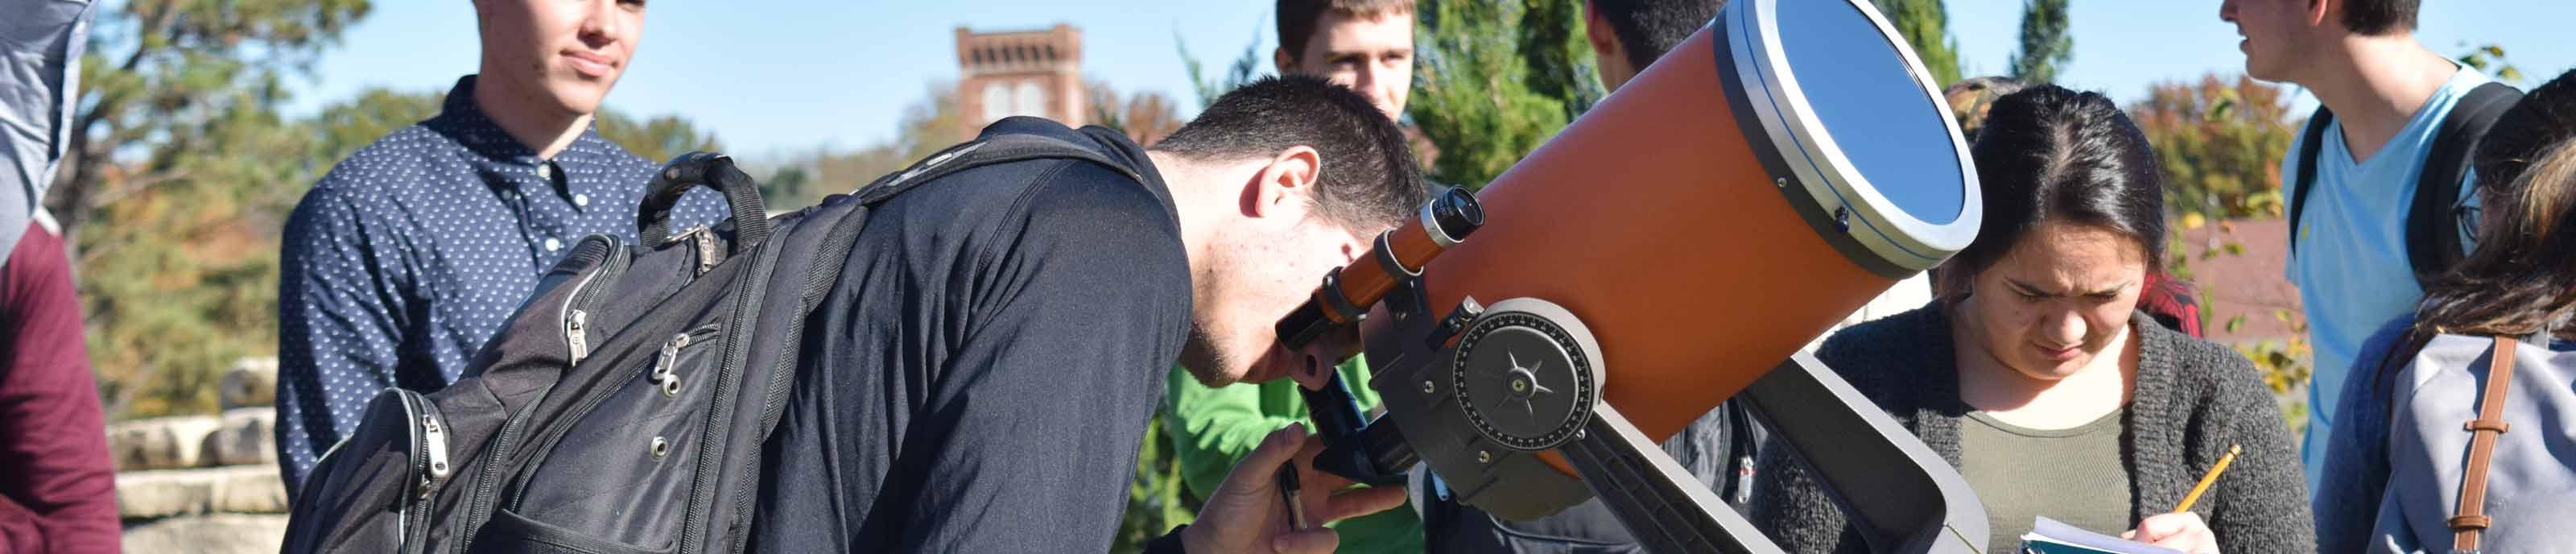 学生们在天文学课上使用望远镜